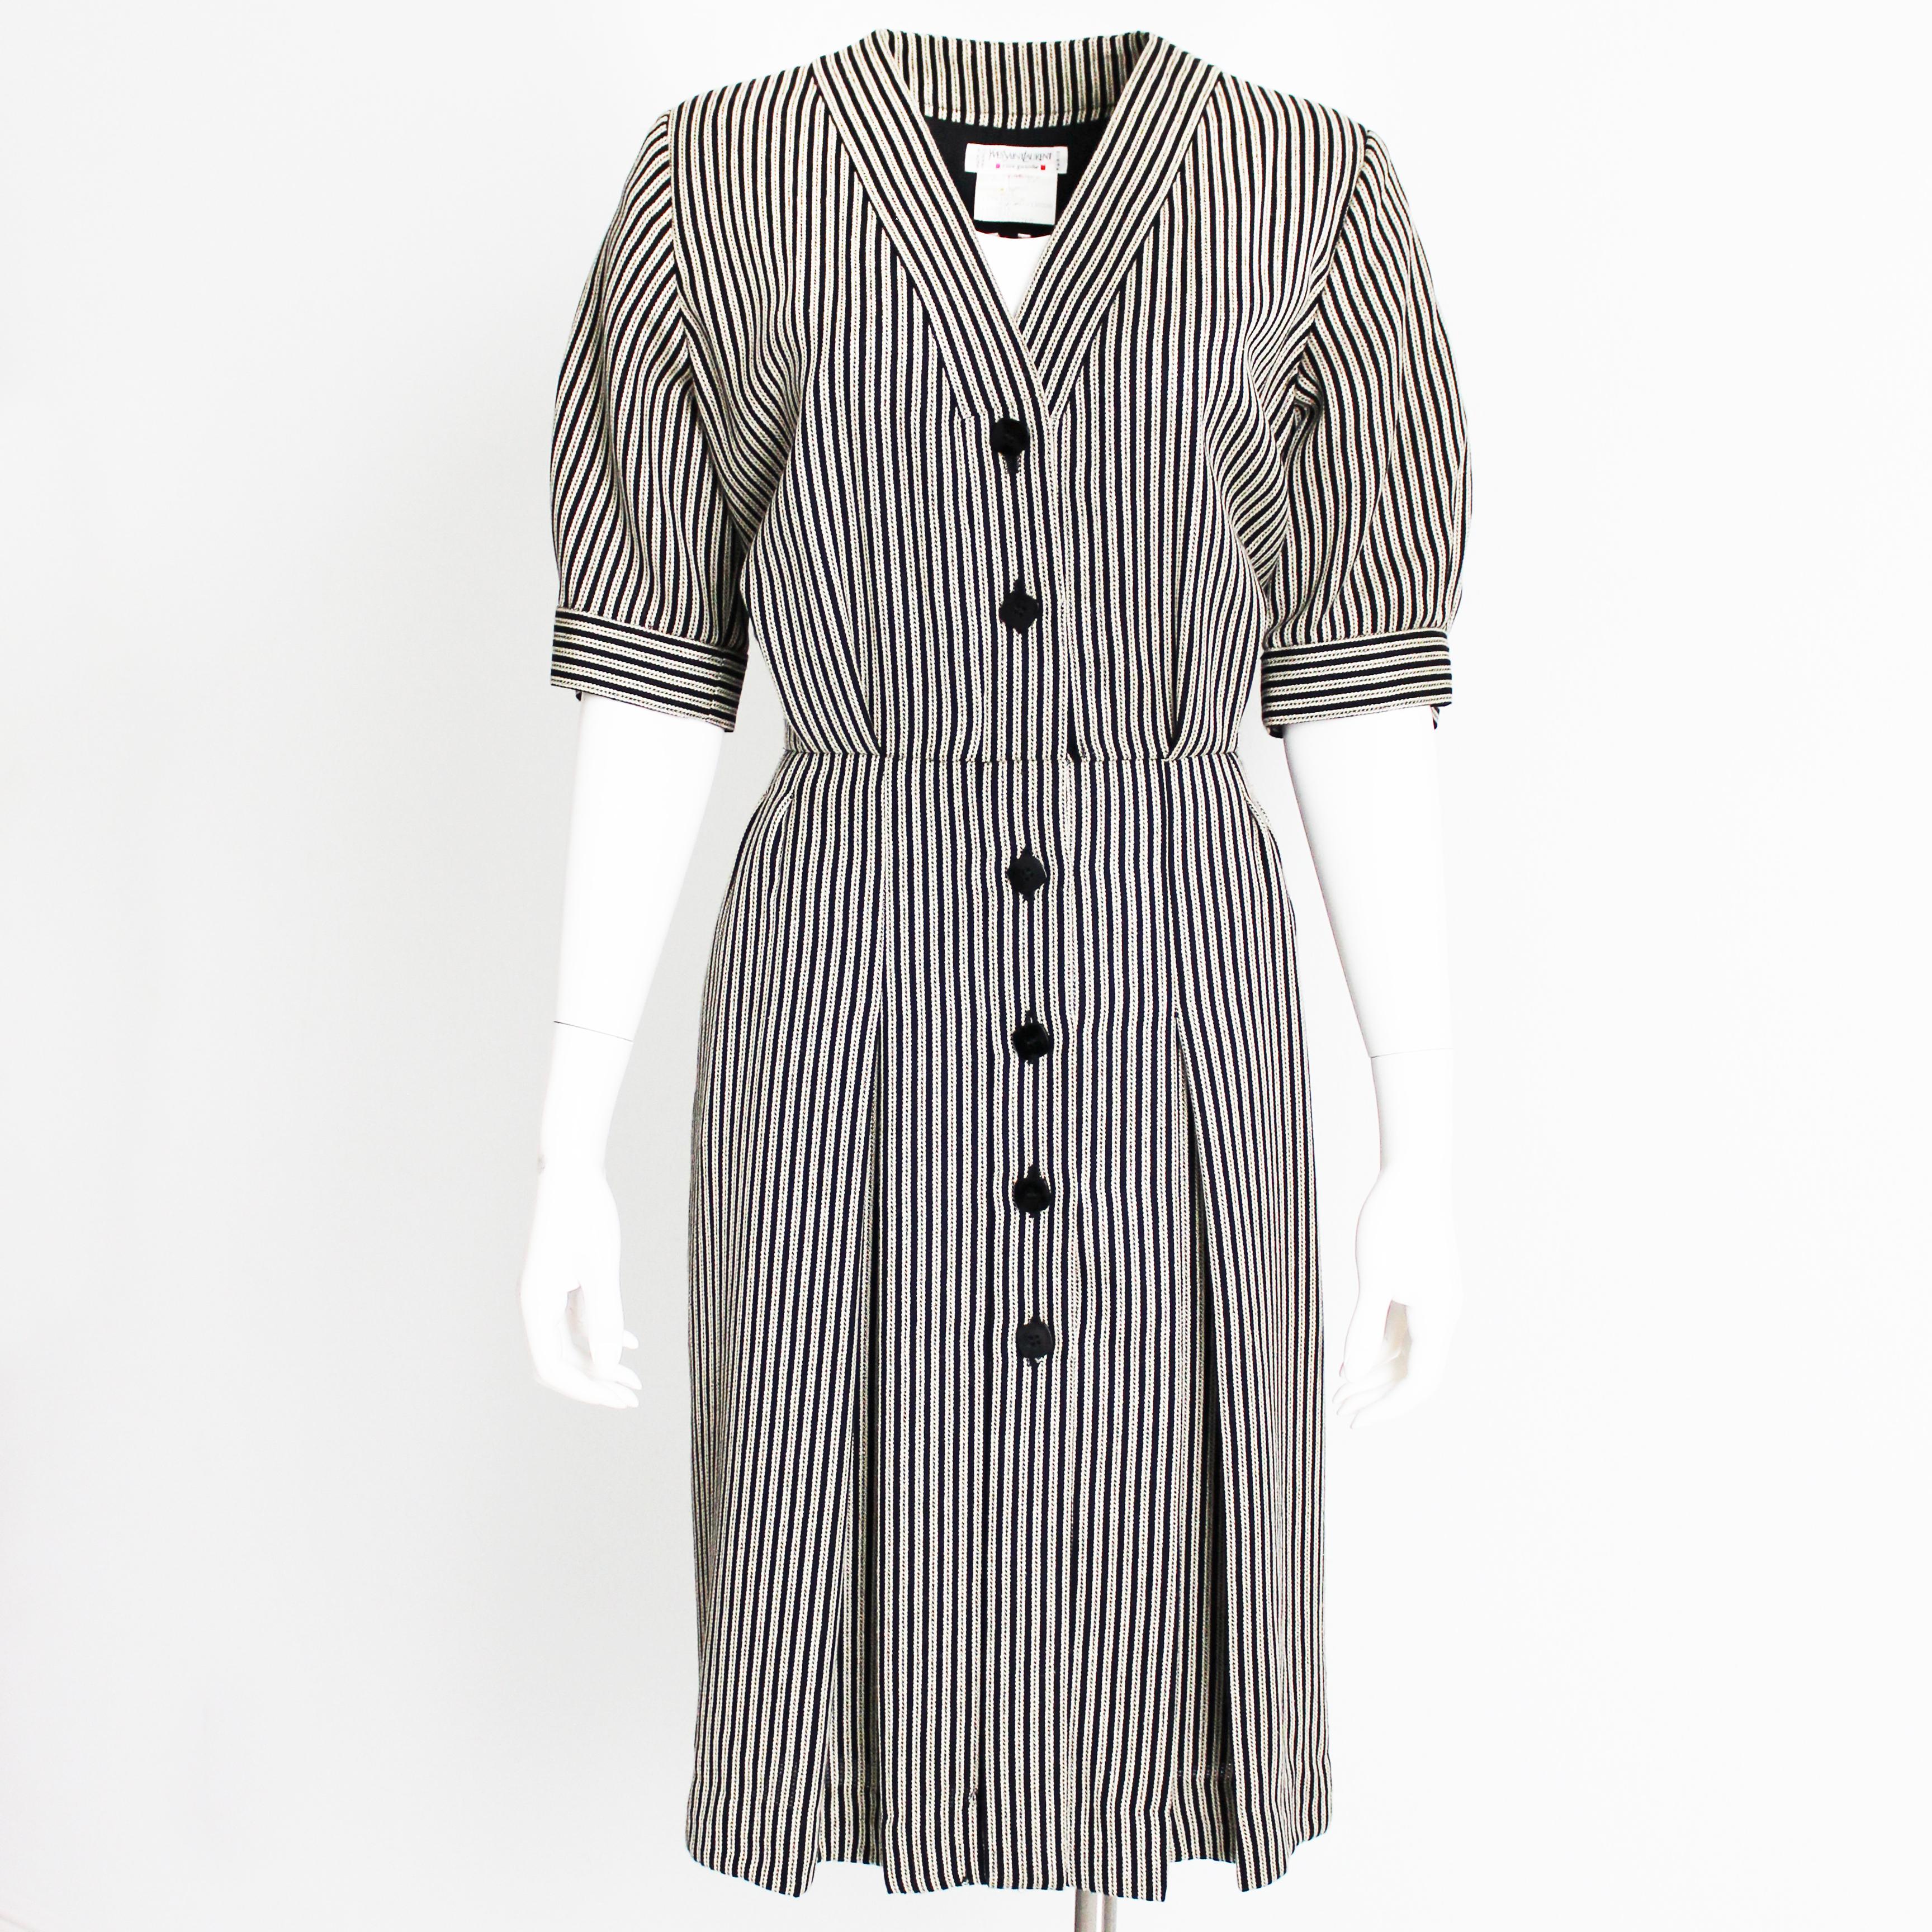 Authentique robe vintage à rayures Yves Saint Laurent Rive Gauche, d'occasion, probablement réalisée dans les années 1990.  Confectionnée dans un tissu à rayures en laine/soie/rayon, elle présente un devant boutonné, une taille cintrée, des poches